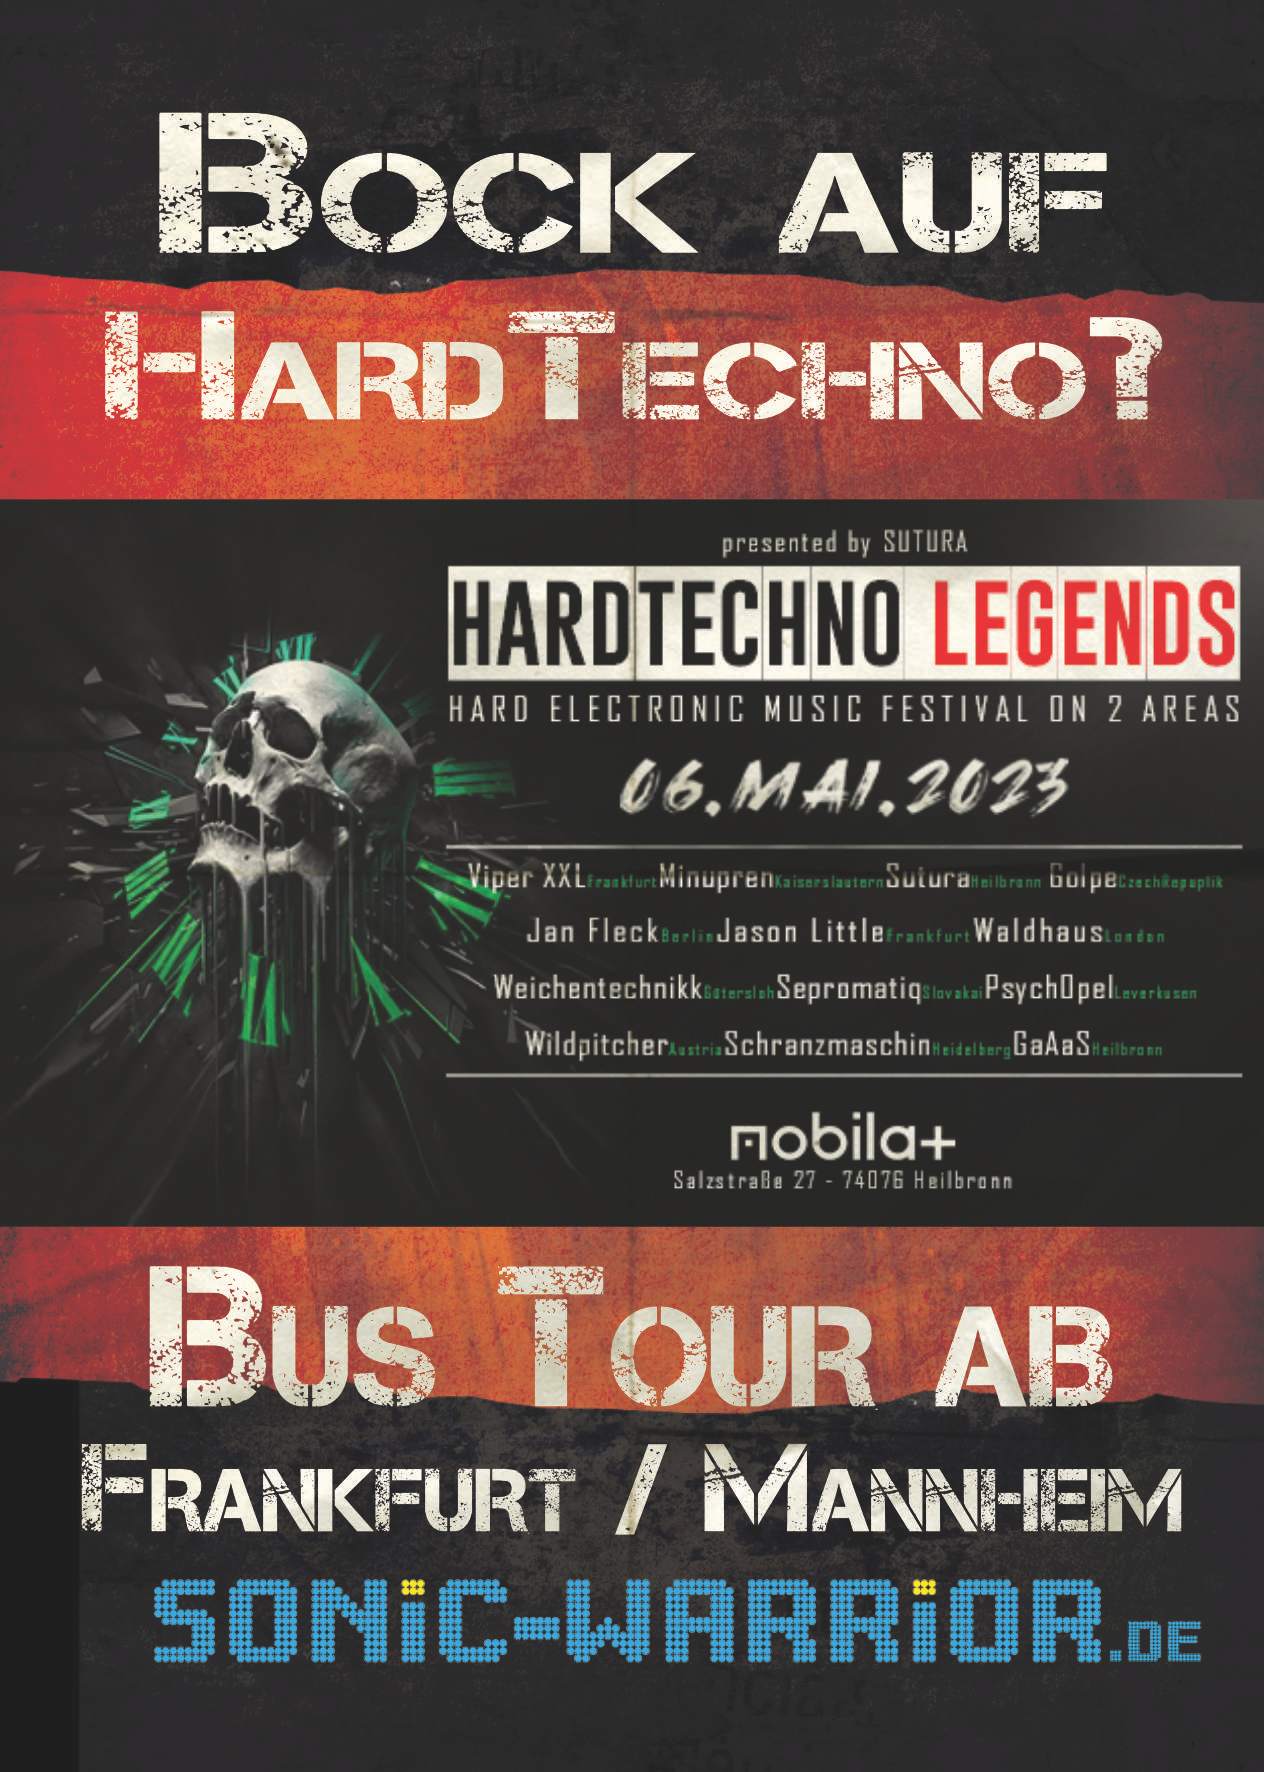 Bus Tour zur HardTechno Legends von Frankfurt über Mannheim - フライヤー表